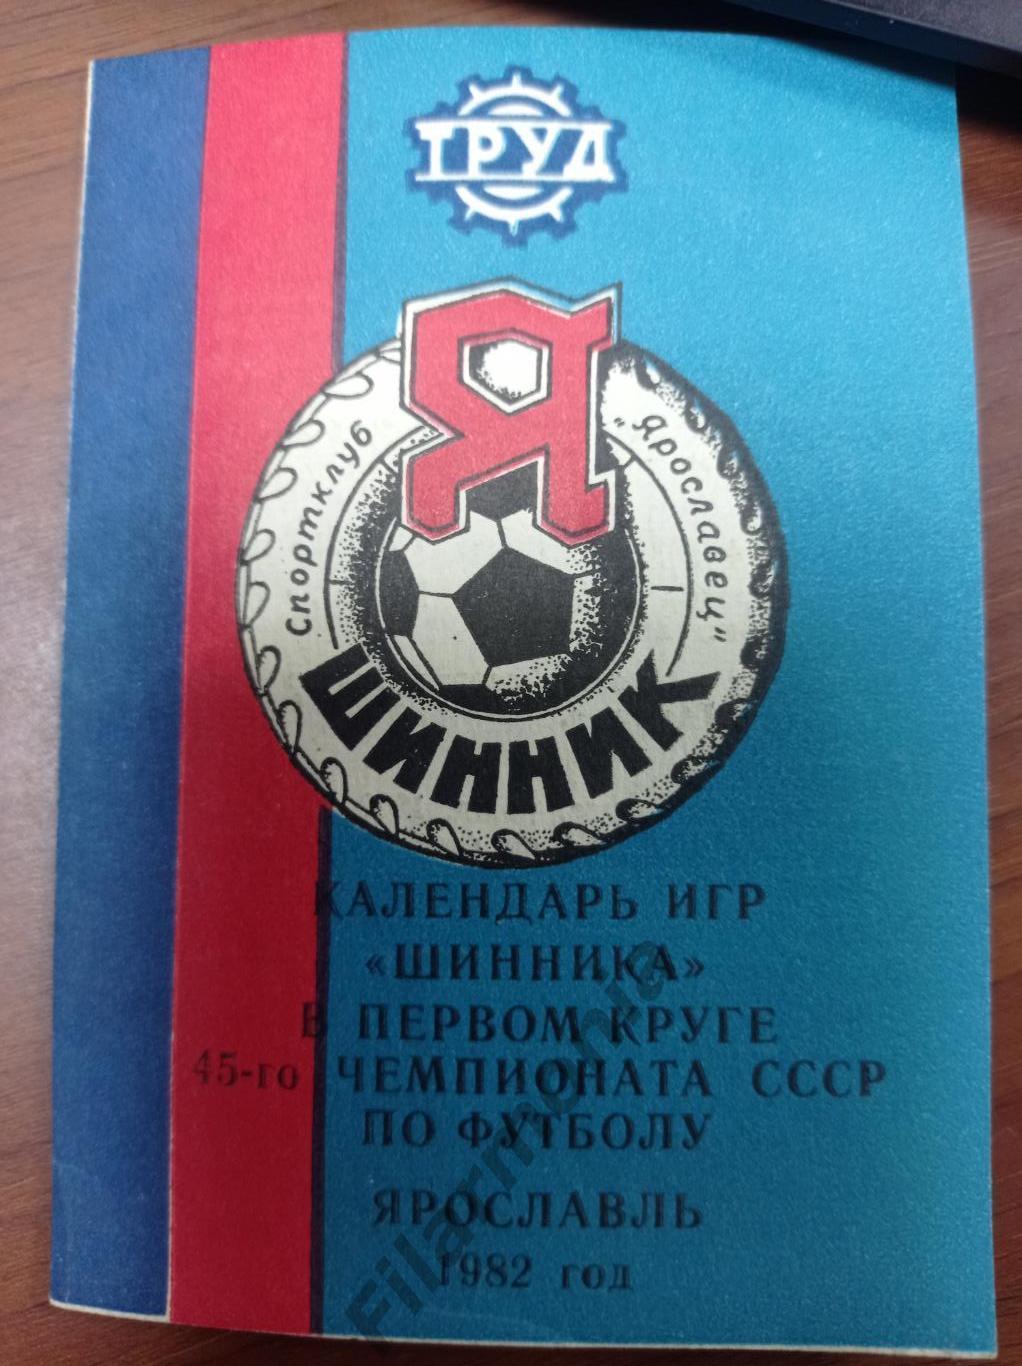 1982 Шинник Ярославль